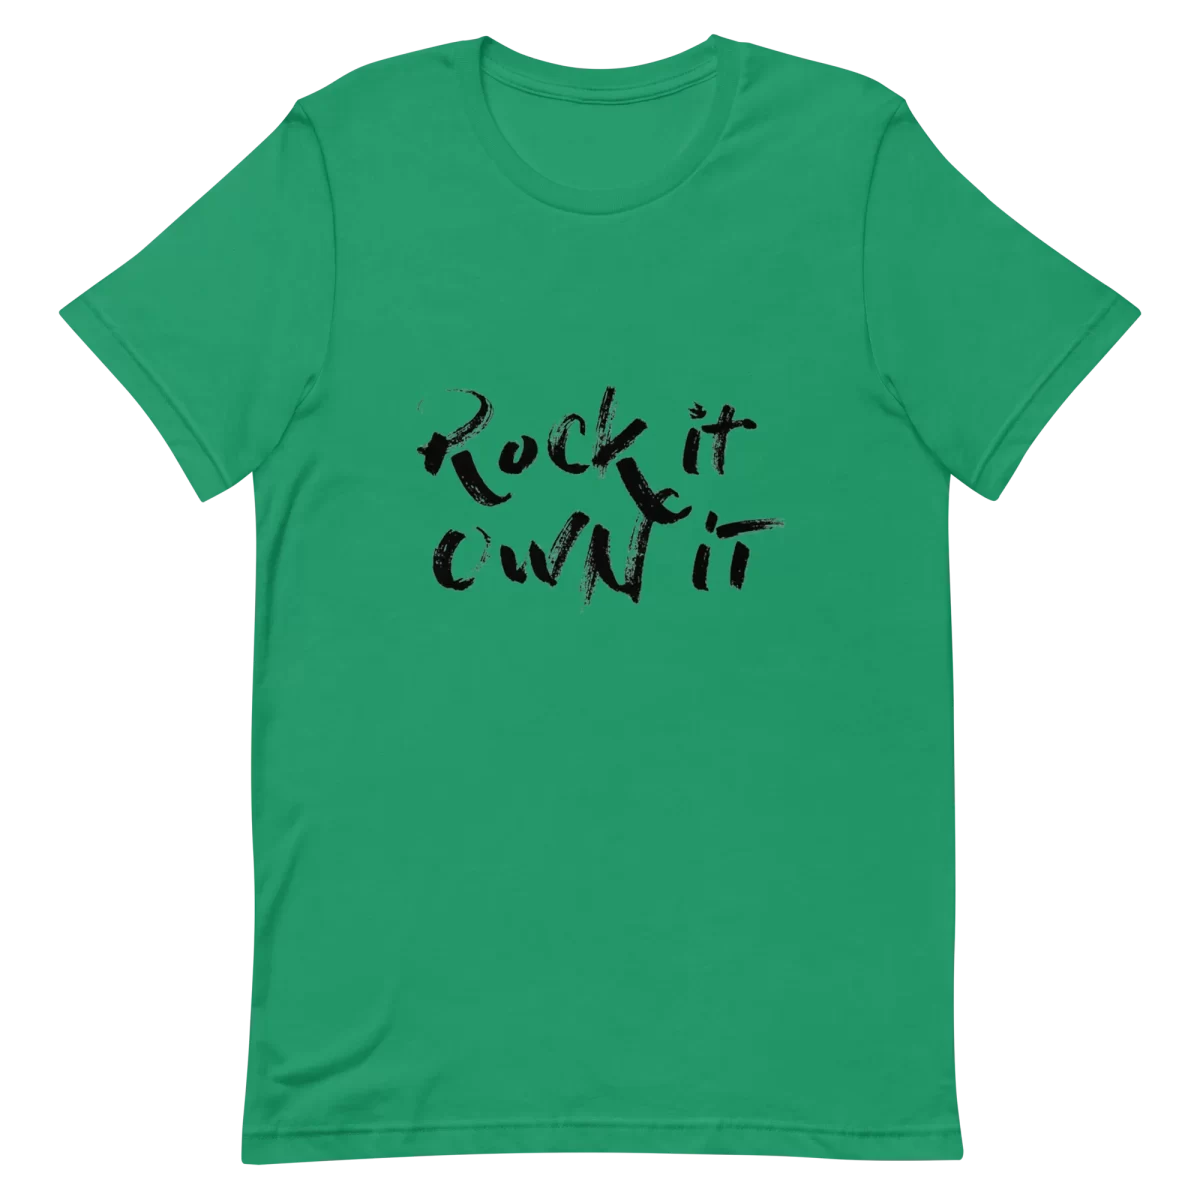 Kelly Unisex T-Shirt - Rock it Own it